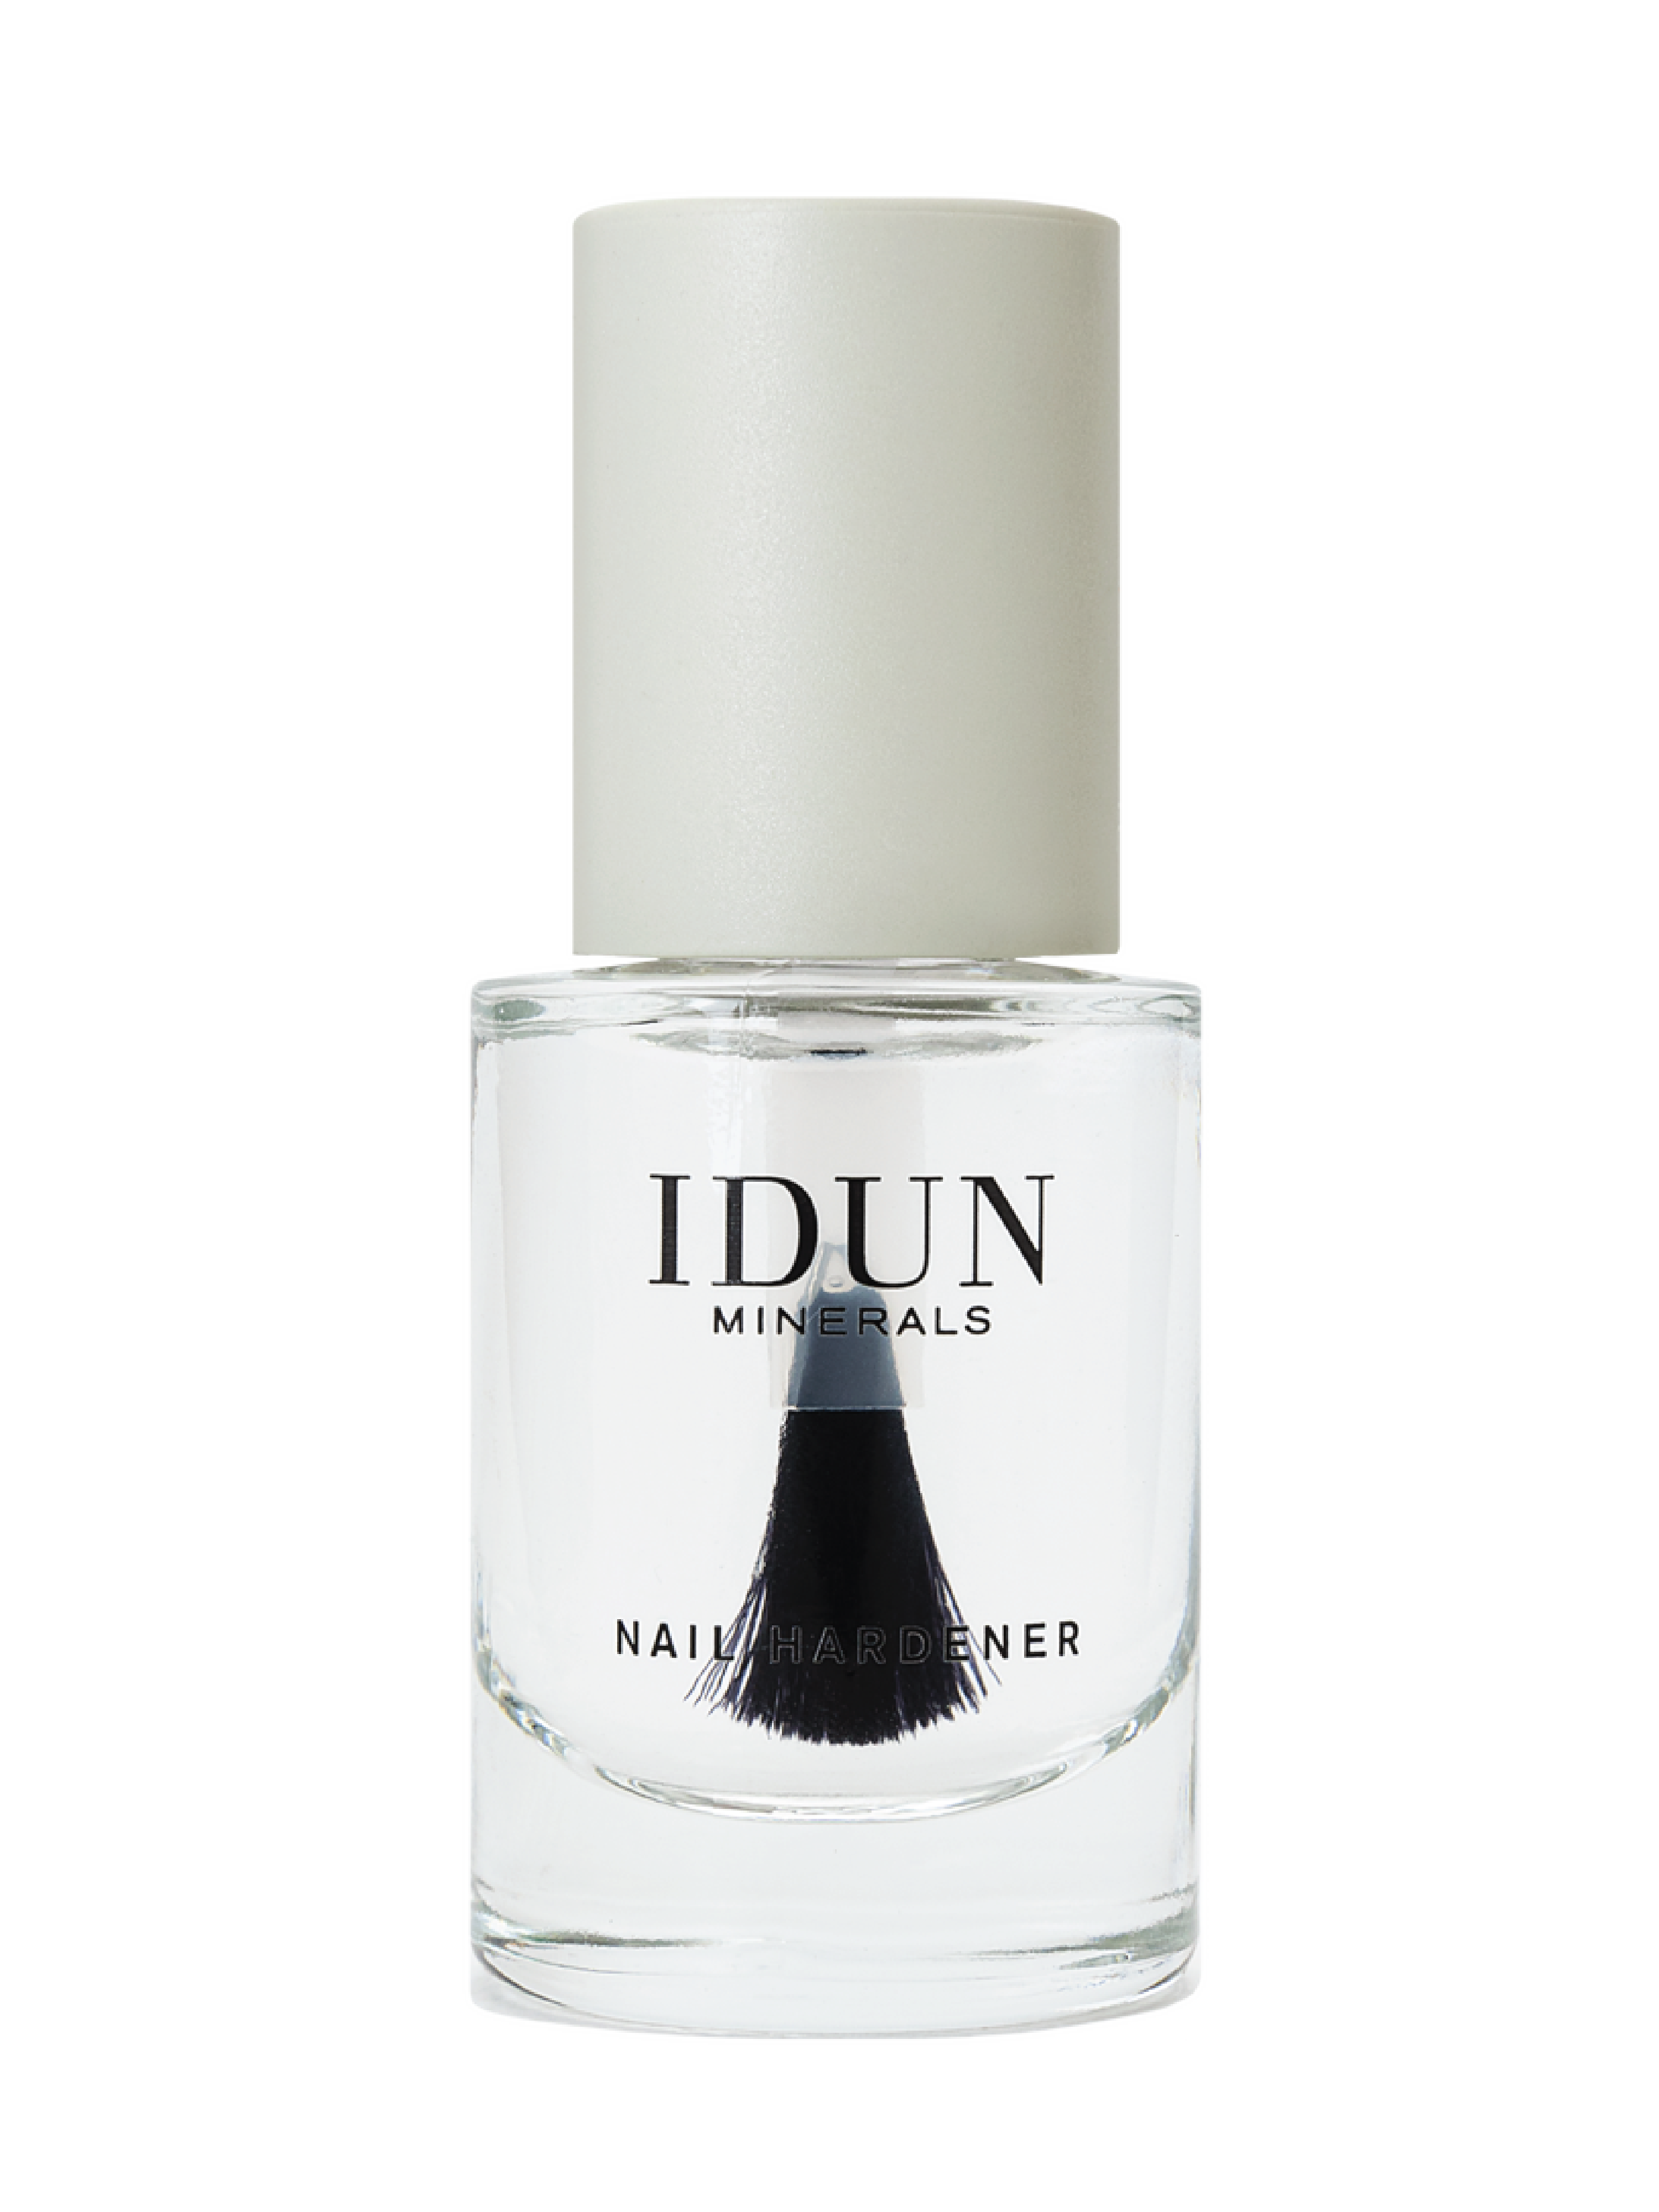 IDUN Minerals Nail Hardener, 11 ml